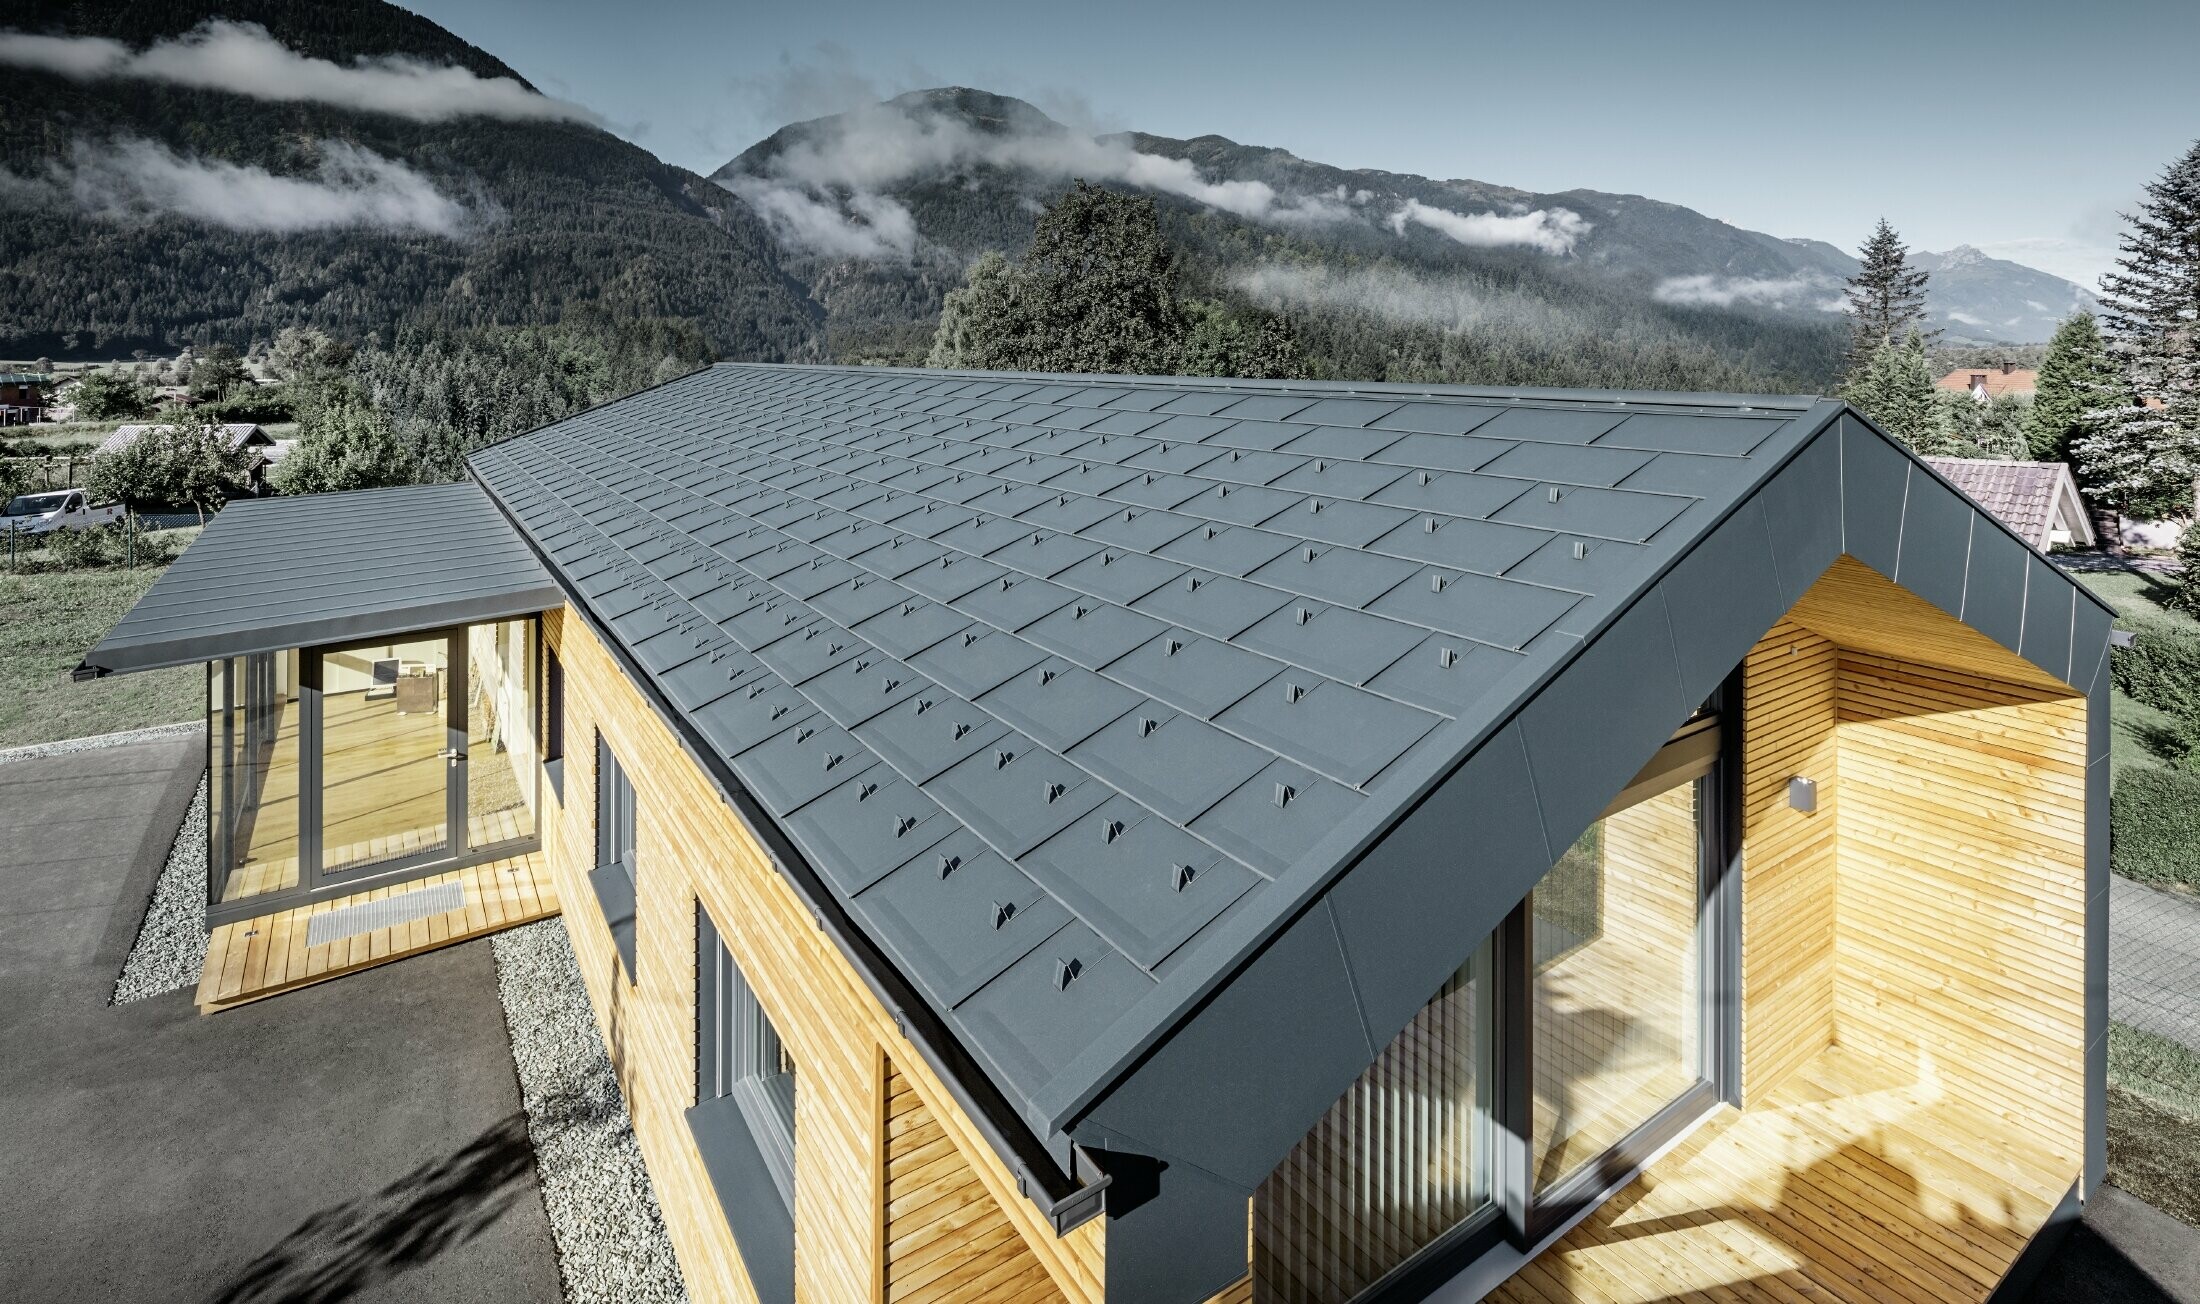 Nieuw kantoorgebouw van Holzbau Faltheiner met gevel van larikshout, royale raamoppervlakken en een PREFA dak in antraciet.